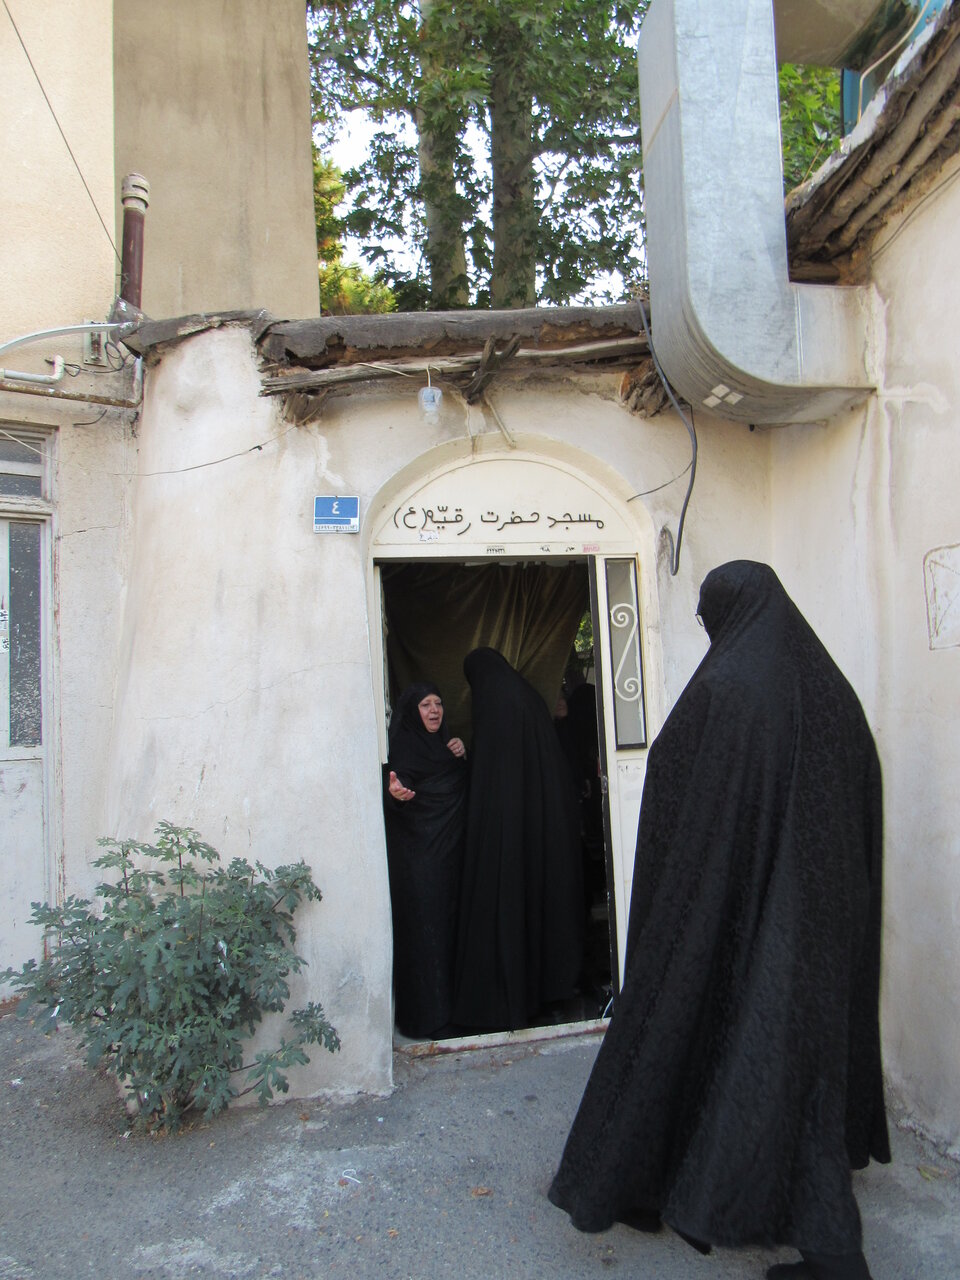 روایت خواندنی دختر آخرین کدخدای پونک | در این مسجد فقط زنان کلیددارند